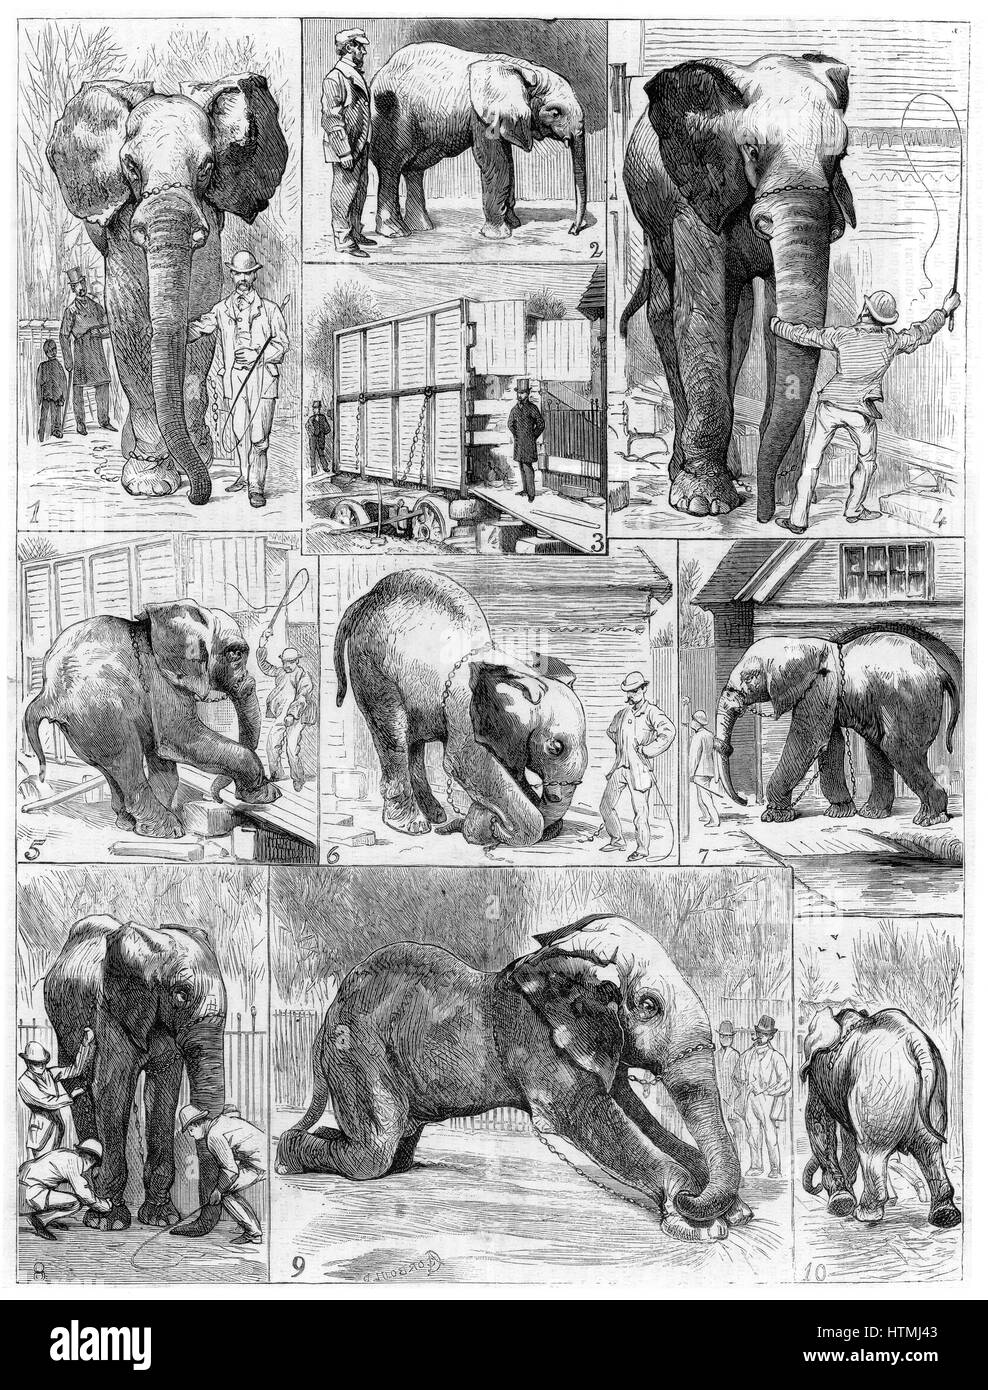 Jumbo il grande elefante africano venduti da Zoo di Londra nel 1882 per il mattatore americano Phineas Taylor Barnum (1810-1891) per il suo circo che divenne noto come il "più grande spettacolo sulla terra". Difficoltà incontrate nell'ottenere Jumbo a lasciare il suo quarti Foto Stock